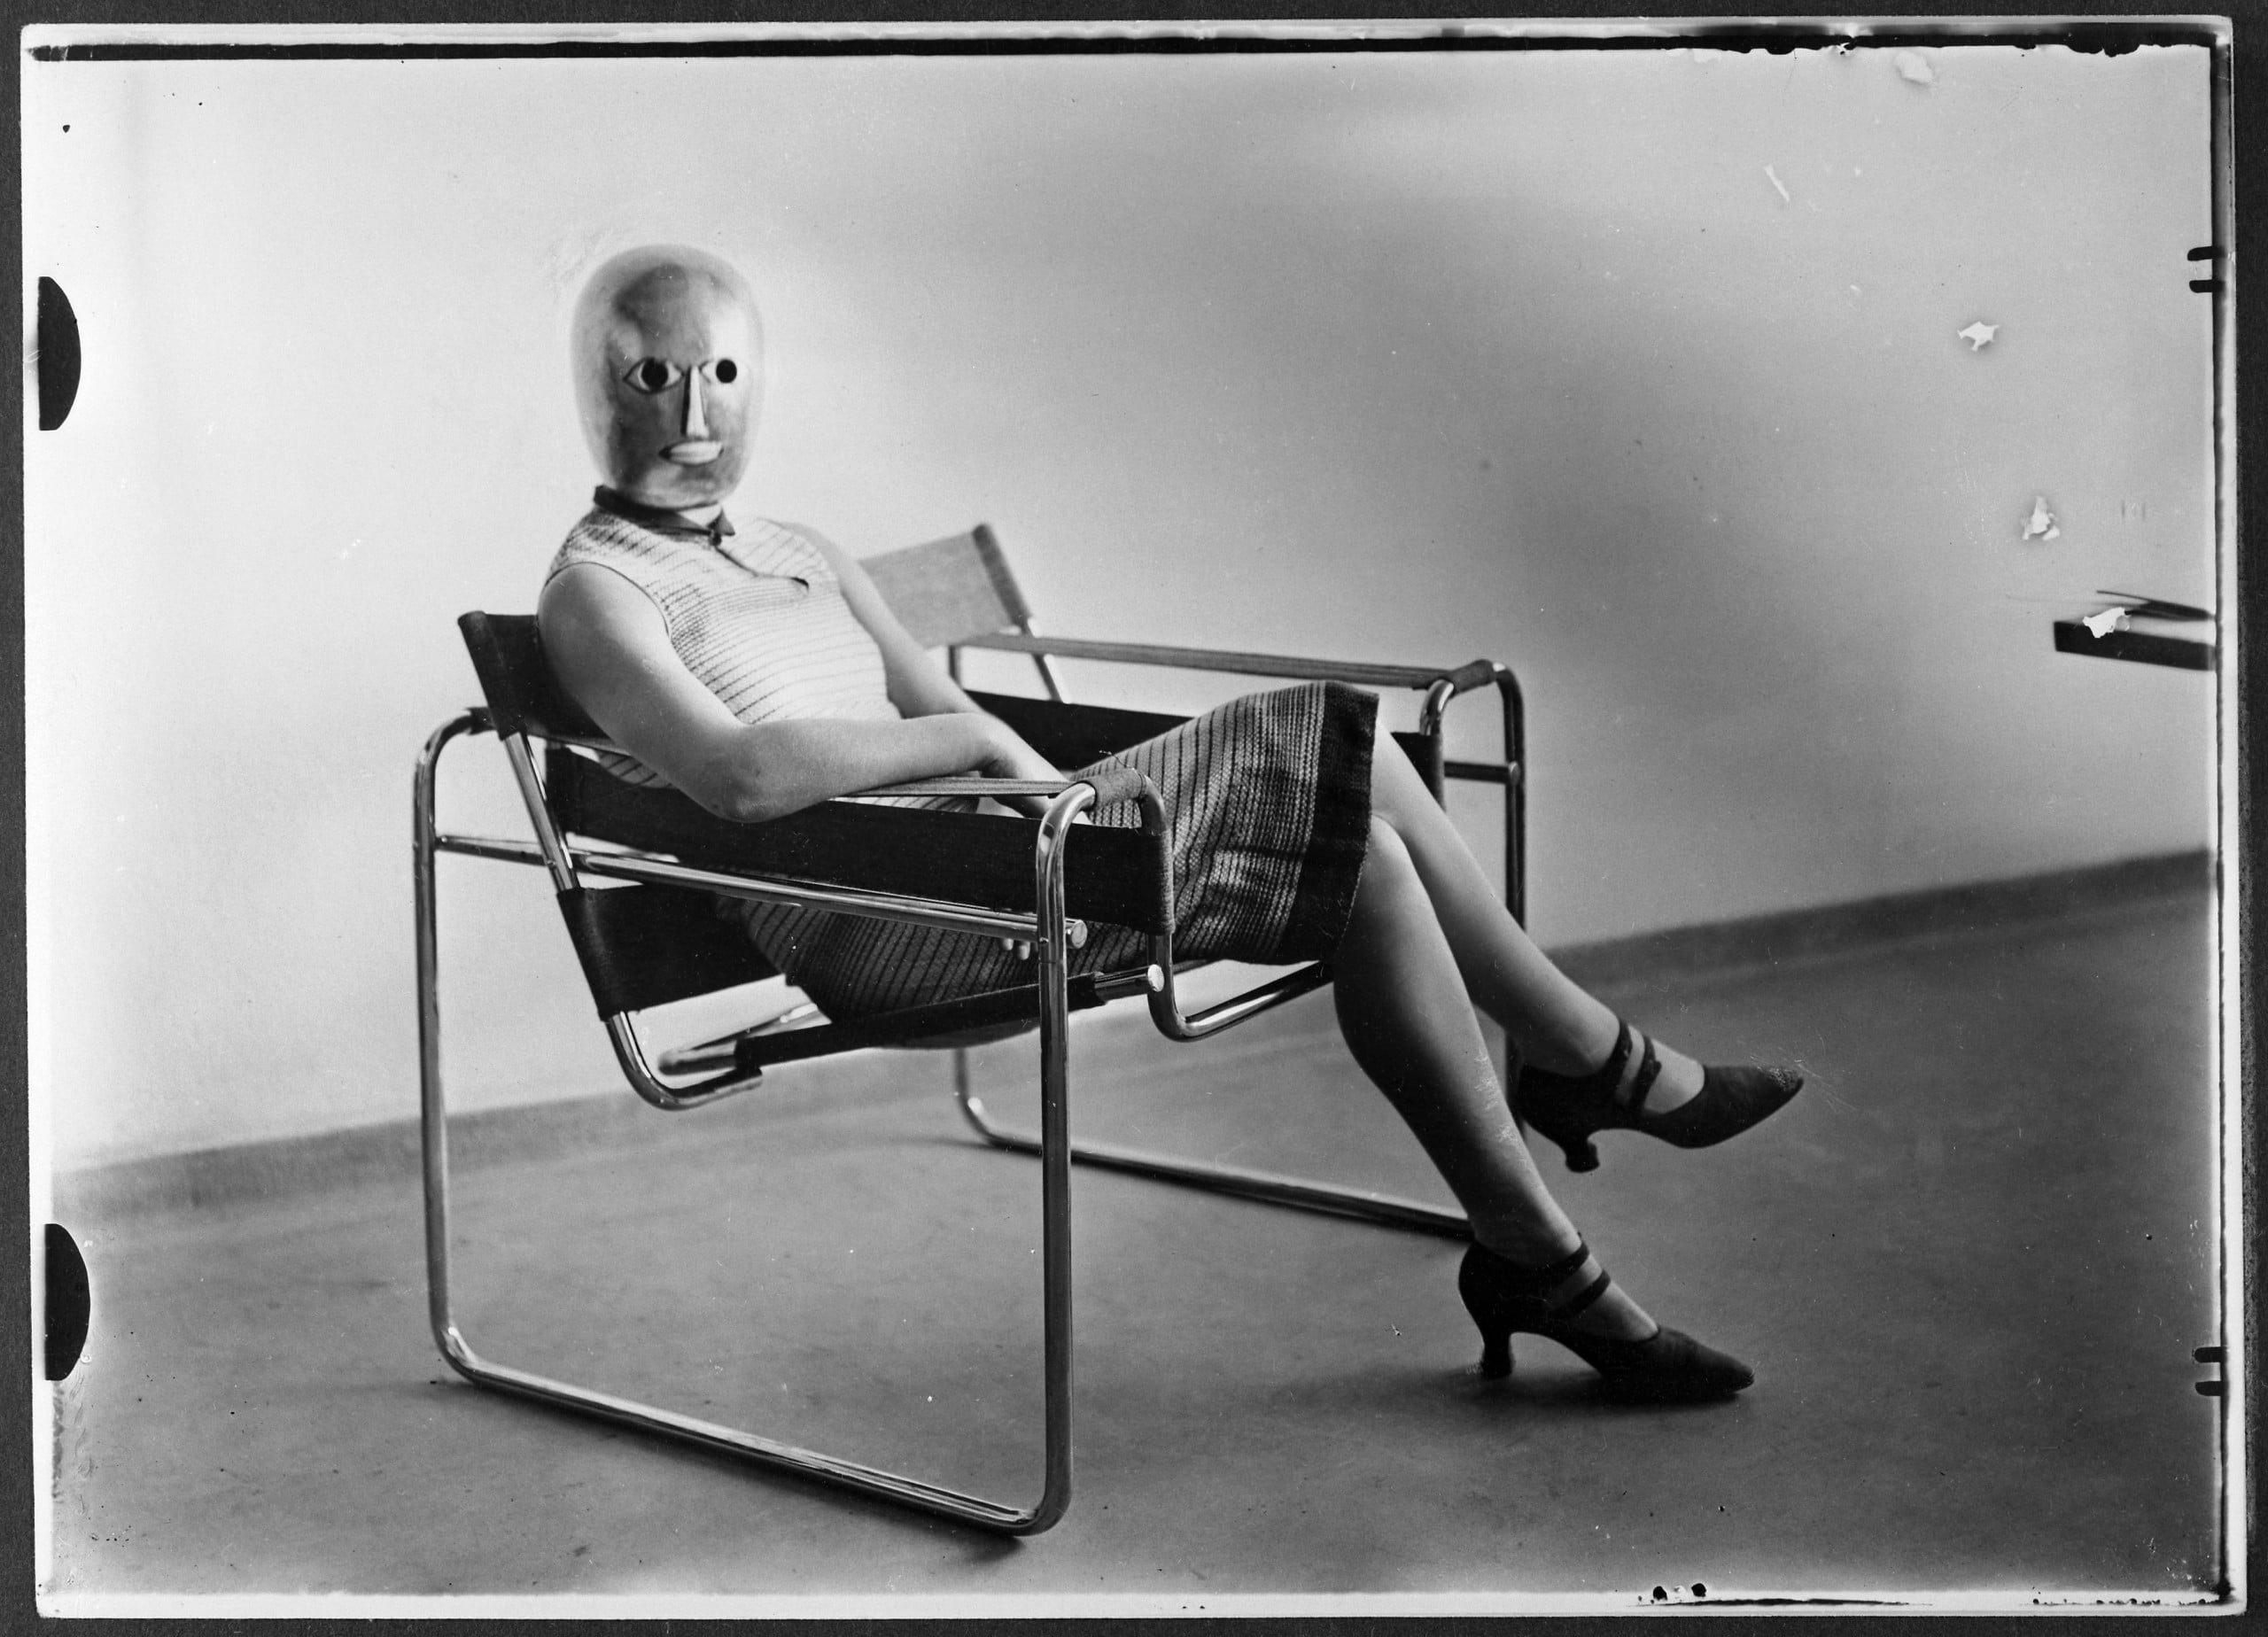 Schwarzweissfotografie einer weiblichen Person auf einem Sessel